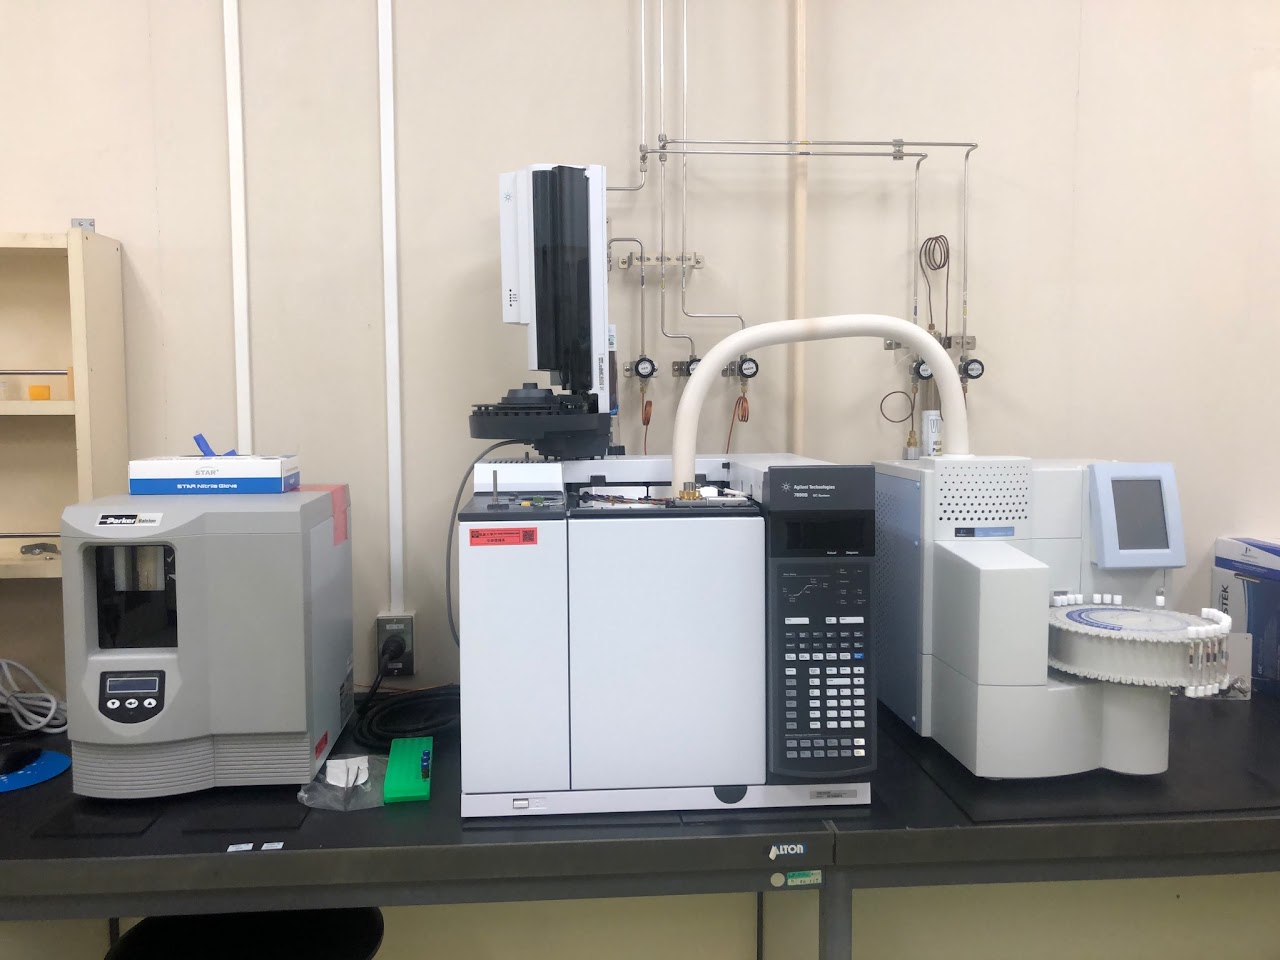 ガスクロマトグラフー水素炎イオン化型検出器 揮発性有機化合物のターゲット分析に用いています。